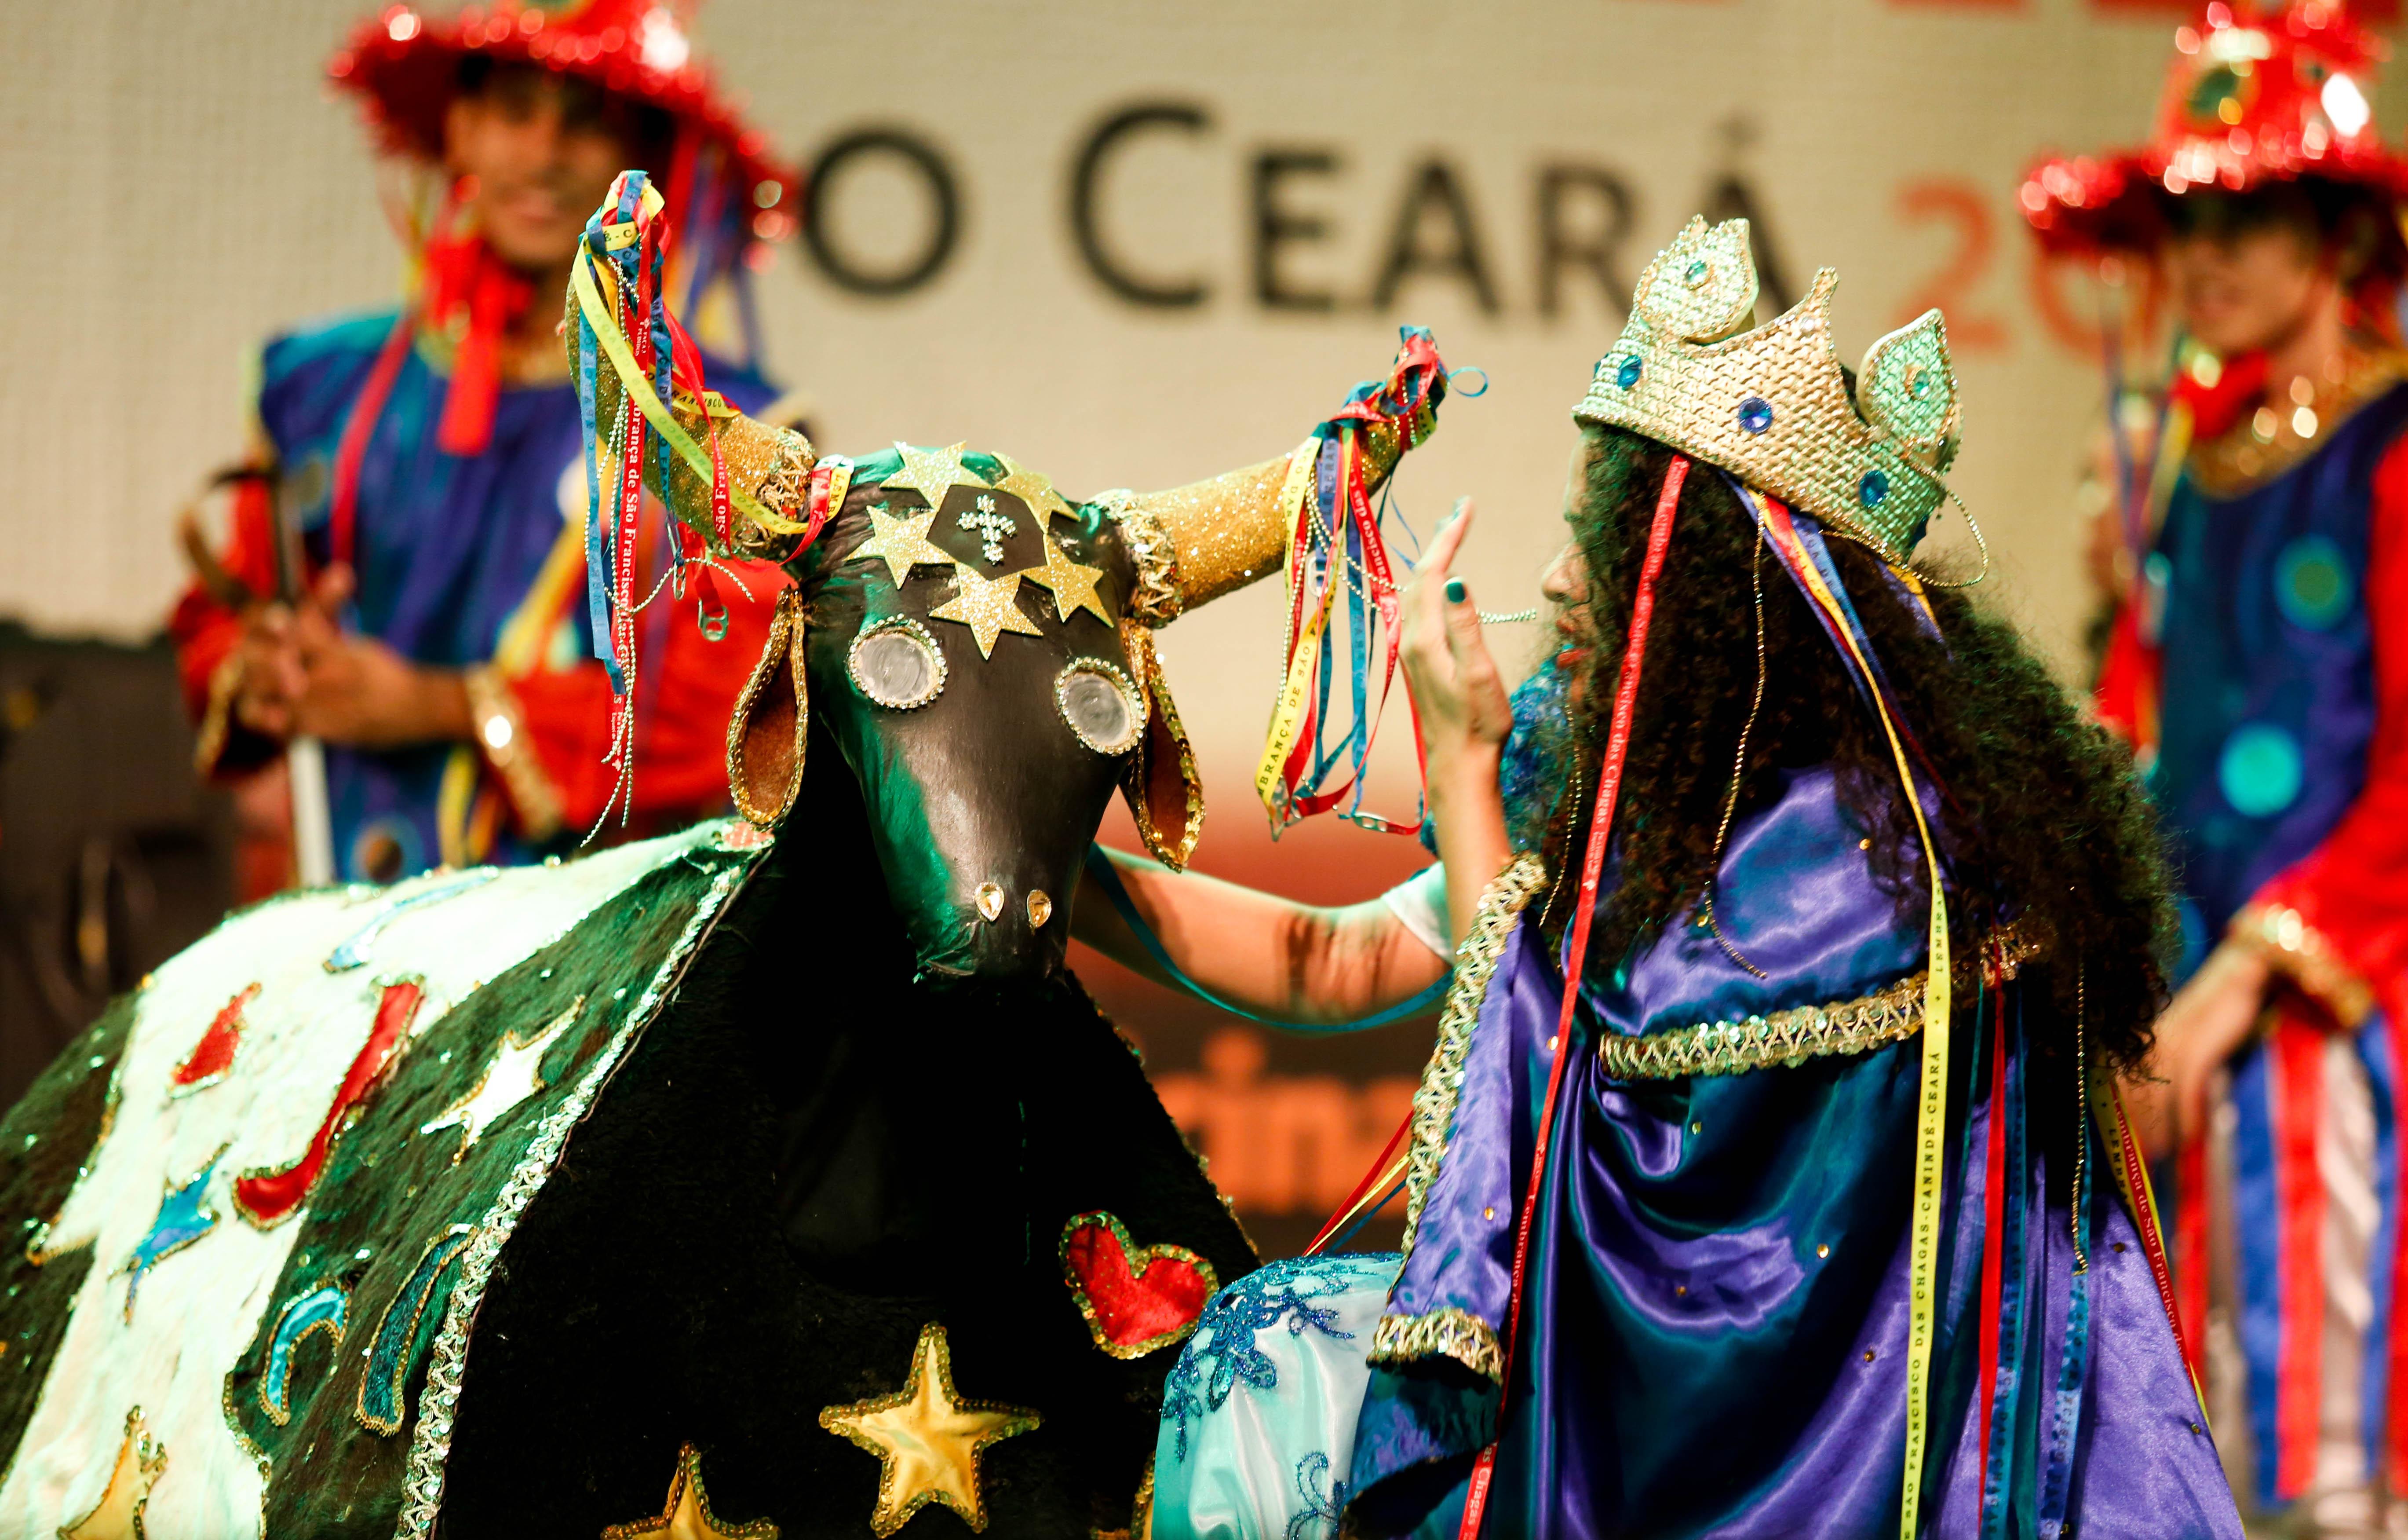 Esta é uma imagem Festival Folclore Ceará